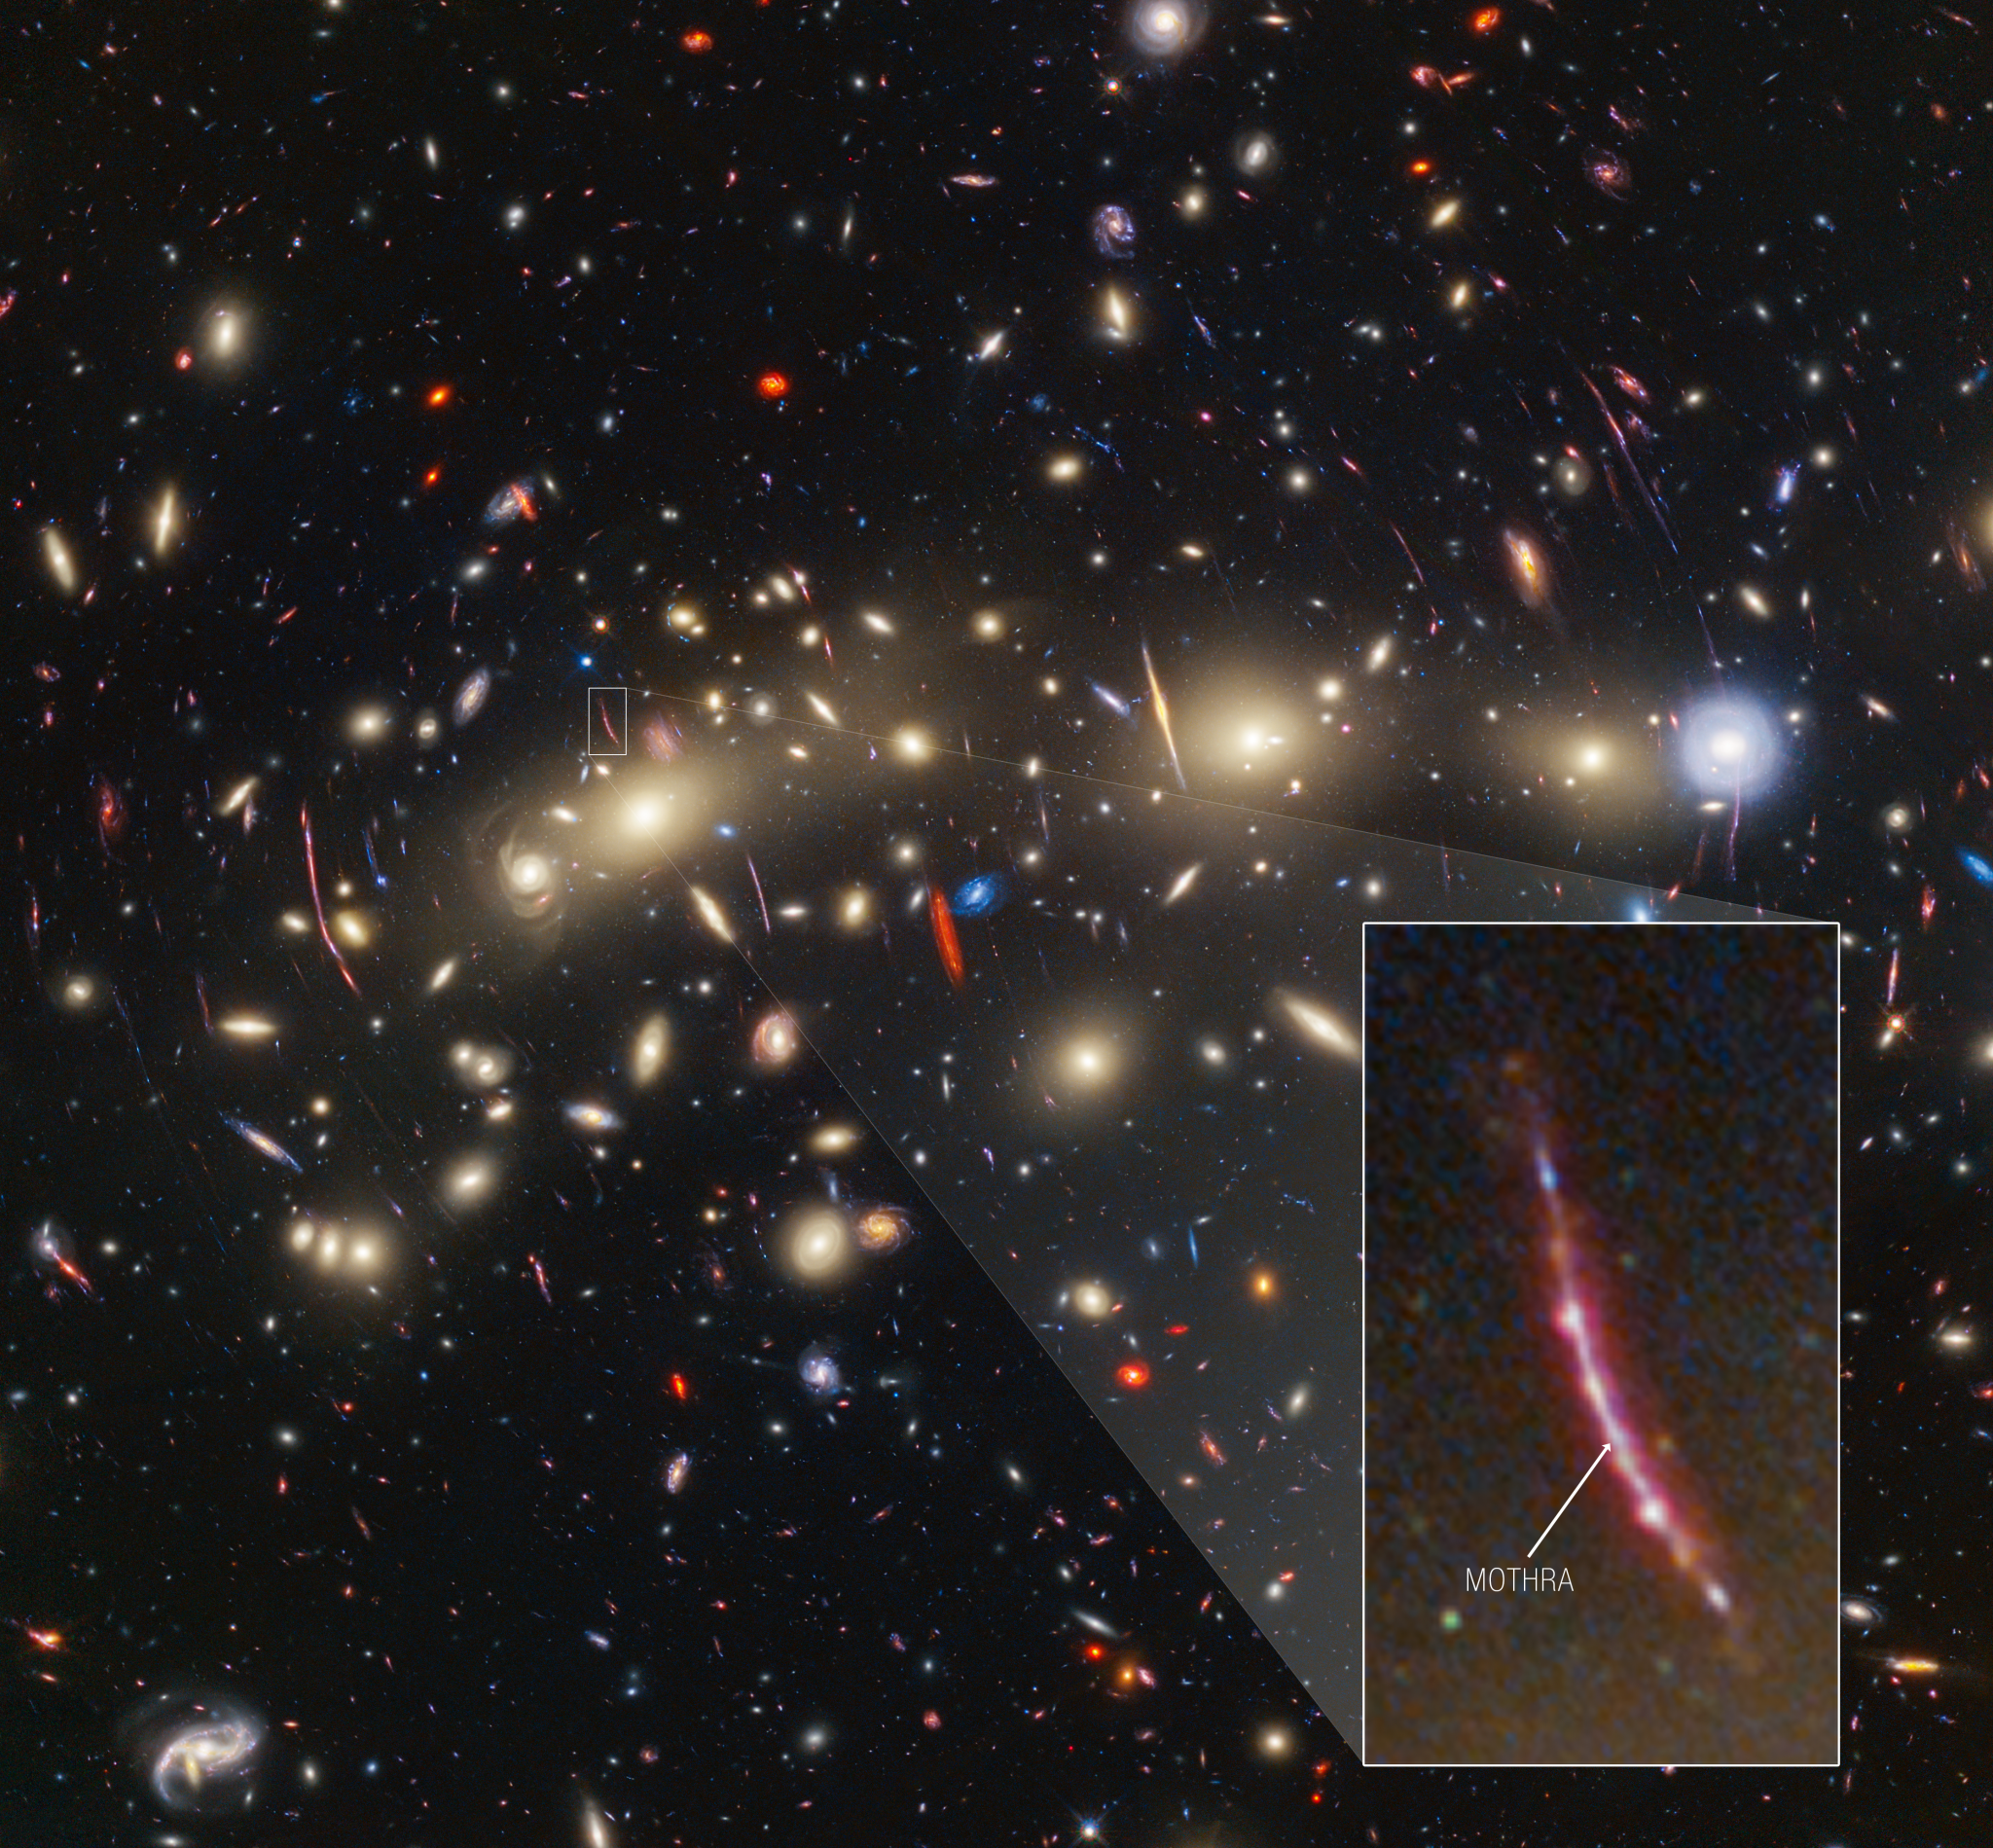 Un campo di galassie sullo sfondo nero dello spazio.  Al centro a sinistra, una caratteristica lineare particolarmente prominente si estende verticalmente.  È delineato da un riquadro bianco e un cuneo leggermente ombreggiato conduce a una vista ingrandita in basso a destra.  Un punto vicino al centro dell'immagine è etichettato "Mothra".